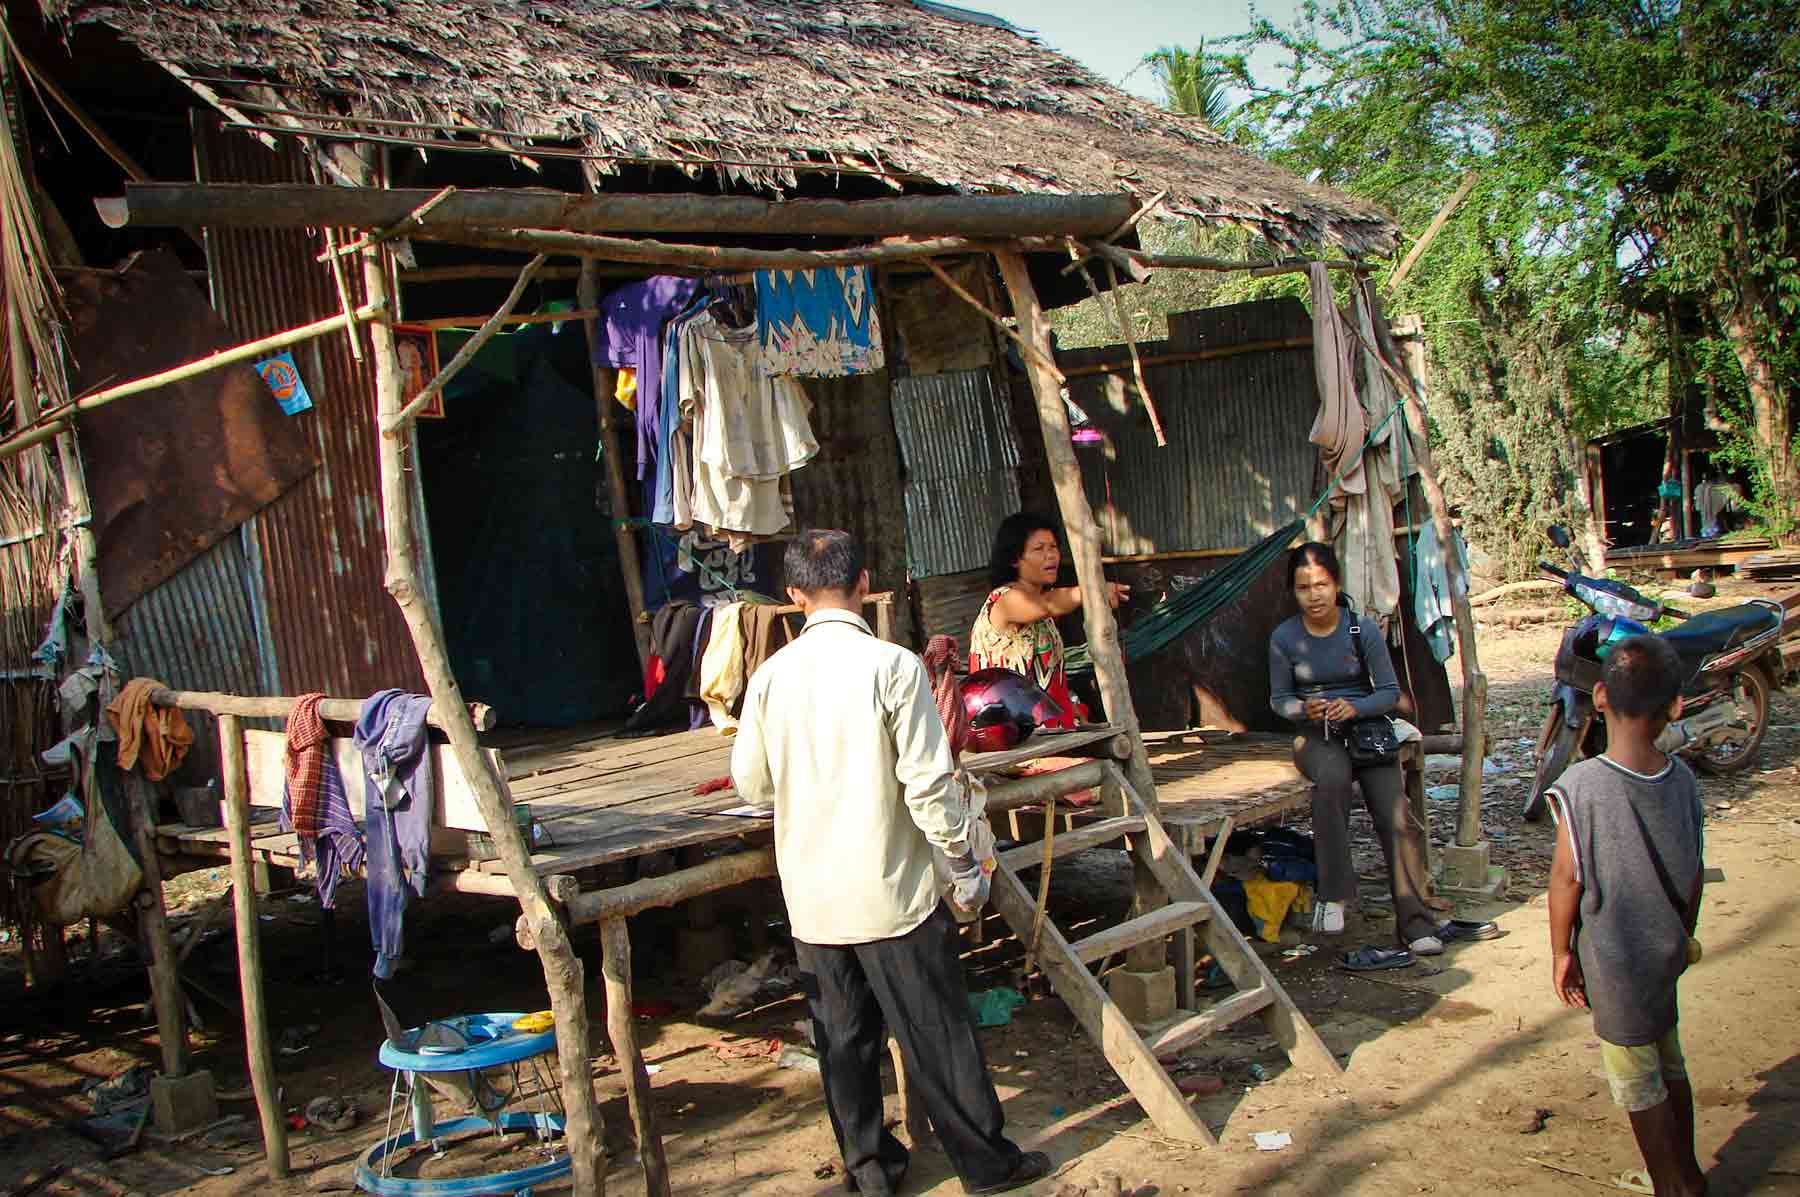 Localisation et intervention humanitaire dans un village au Cambodge pour des enfants pauvres souffrant de maltraitance, d’abus sexuel ou abandonnés par leurs parents et confié à des personnes du village.